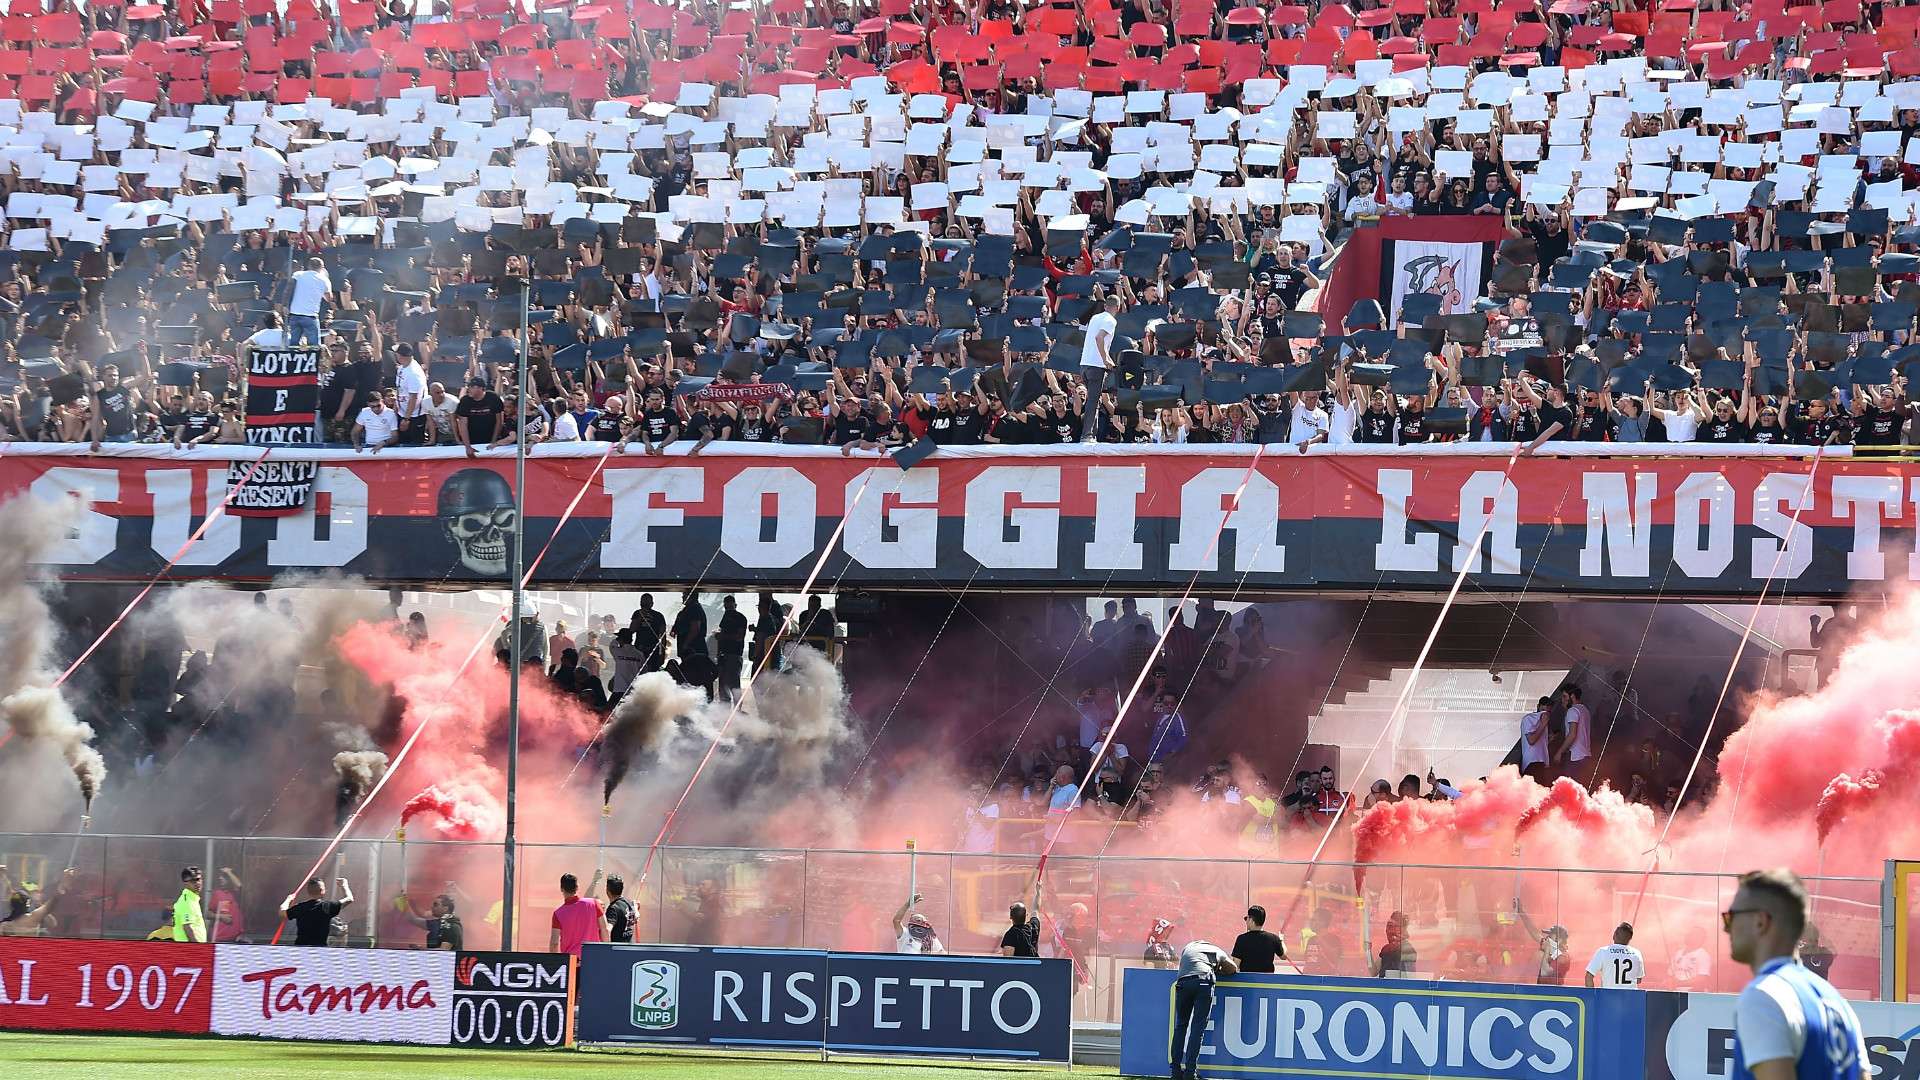 Foggia fans